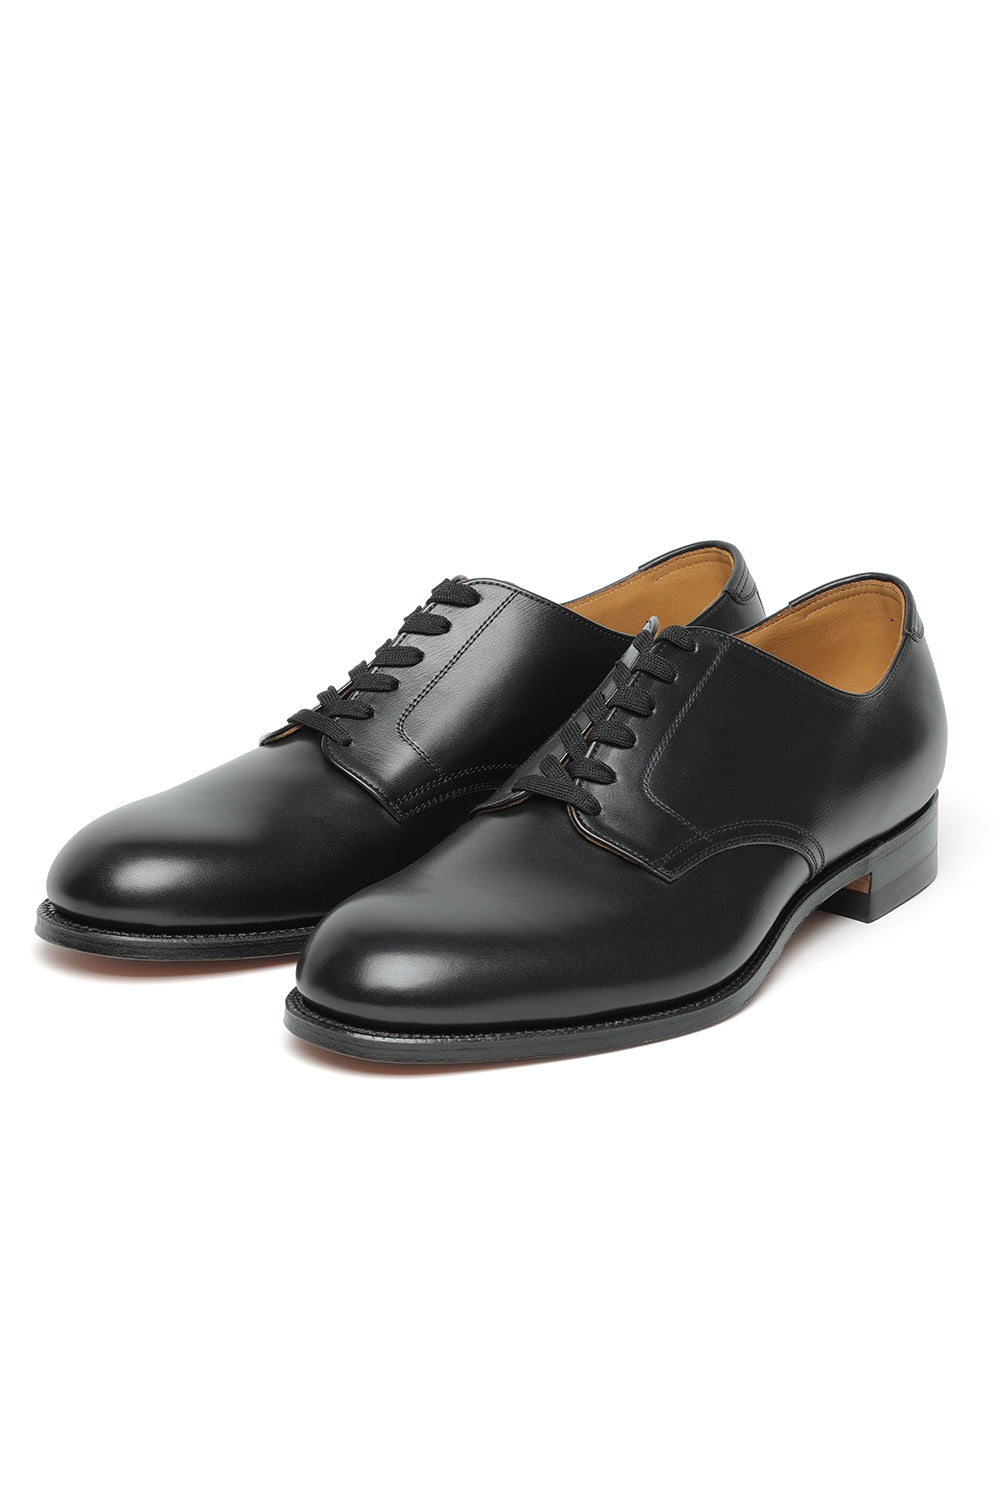 Lot.672 Service Shoes - Black -